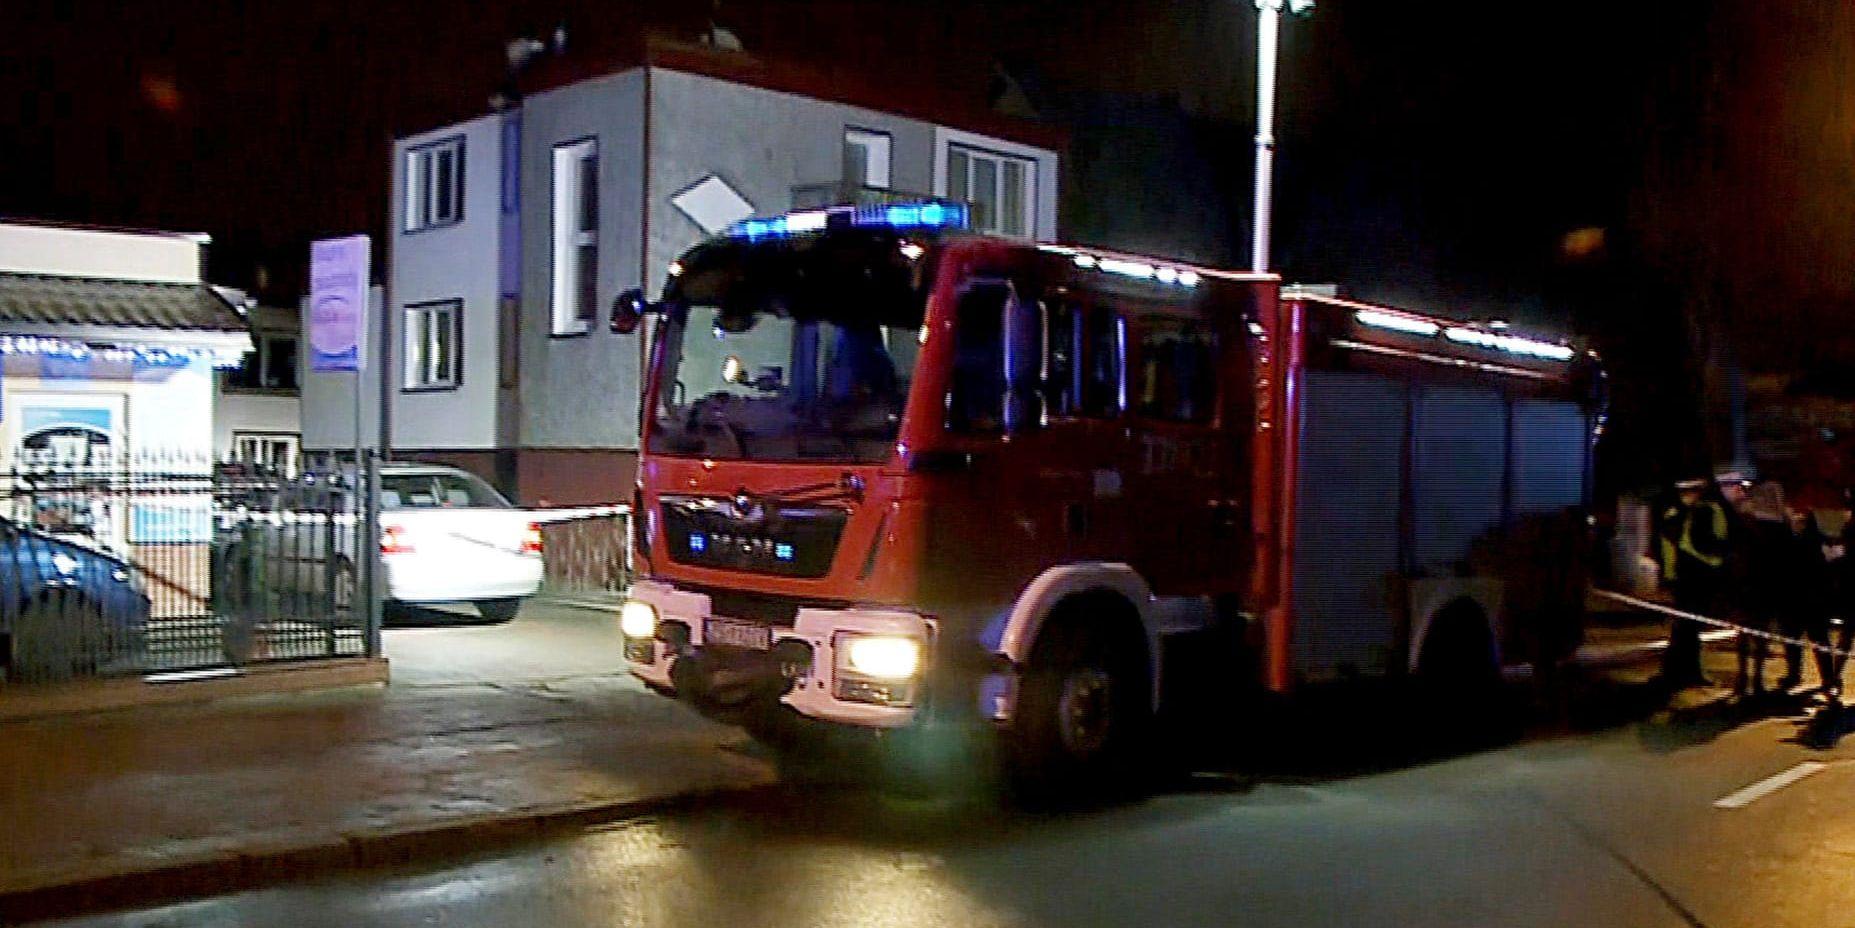 Fem 15-åriga flickor omkom i en brand i ett så kallat "escape room" i Polen och landets premiärminister lovar nu att alla osäkra anläggningar ska stängas. Bilden är tagen utanför anläggningen där flickorna omkom.